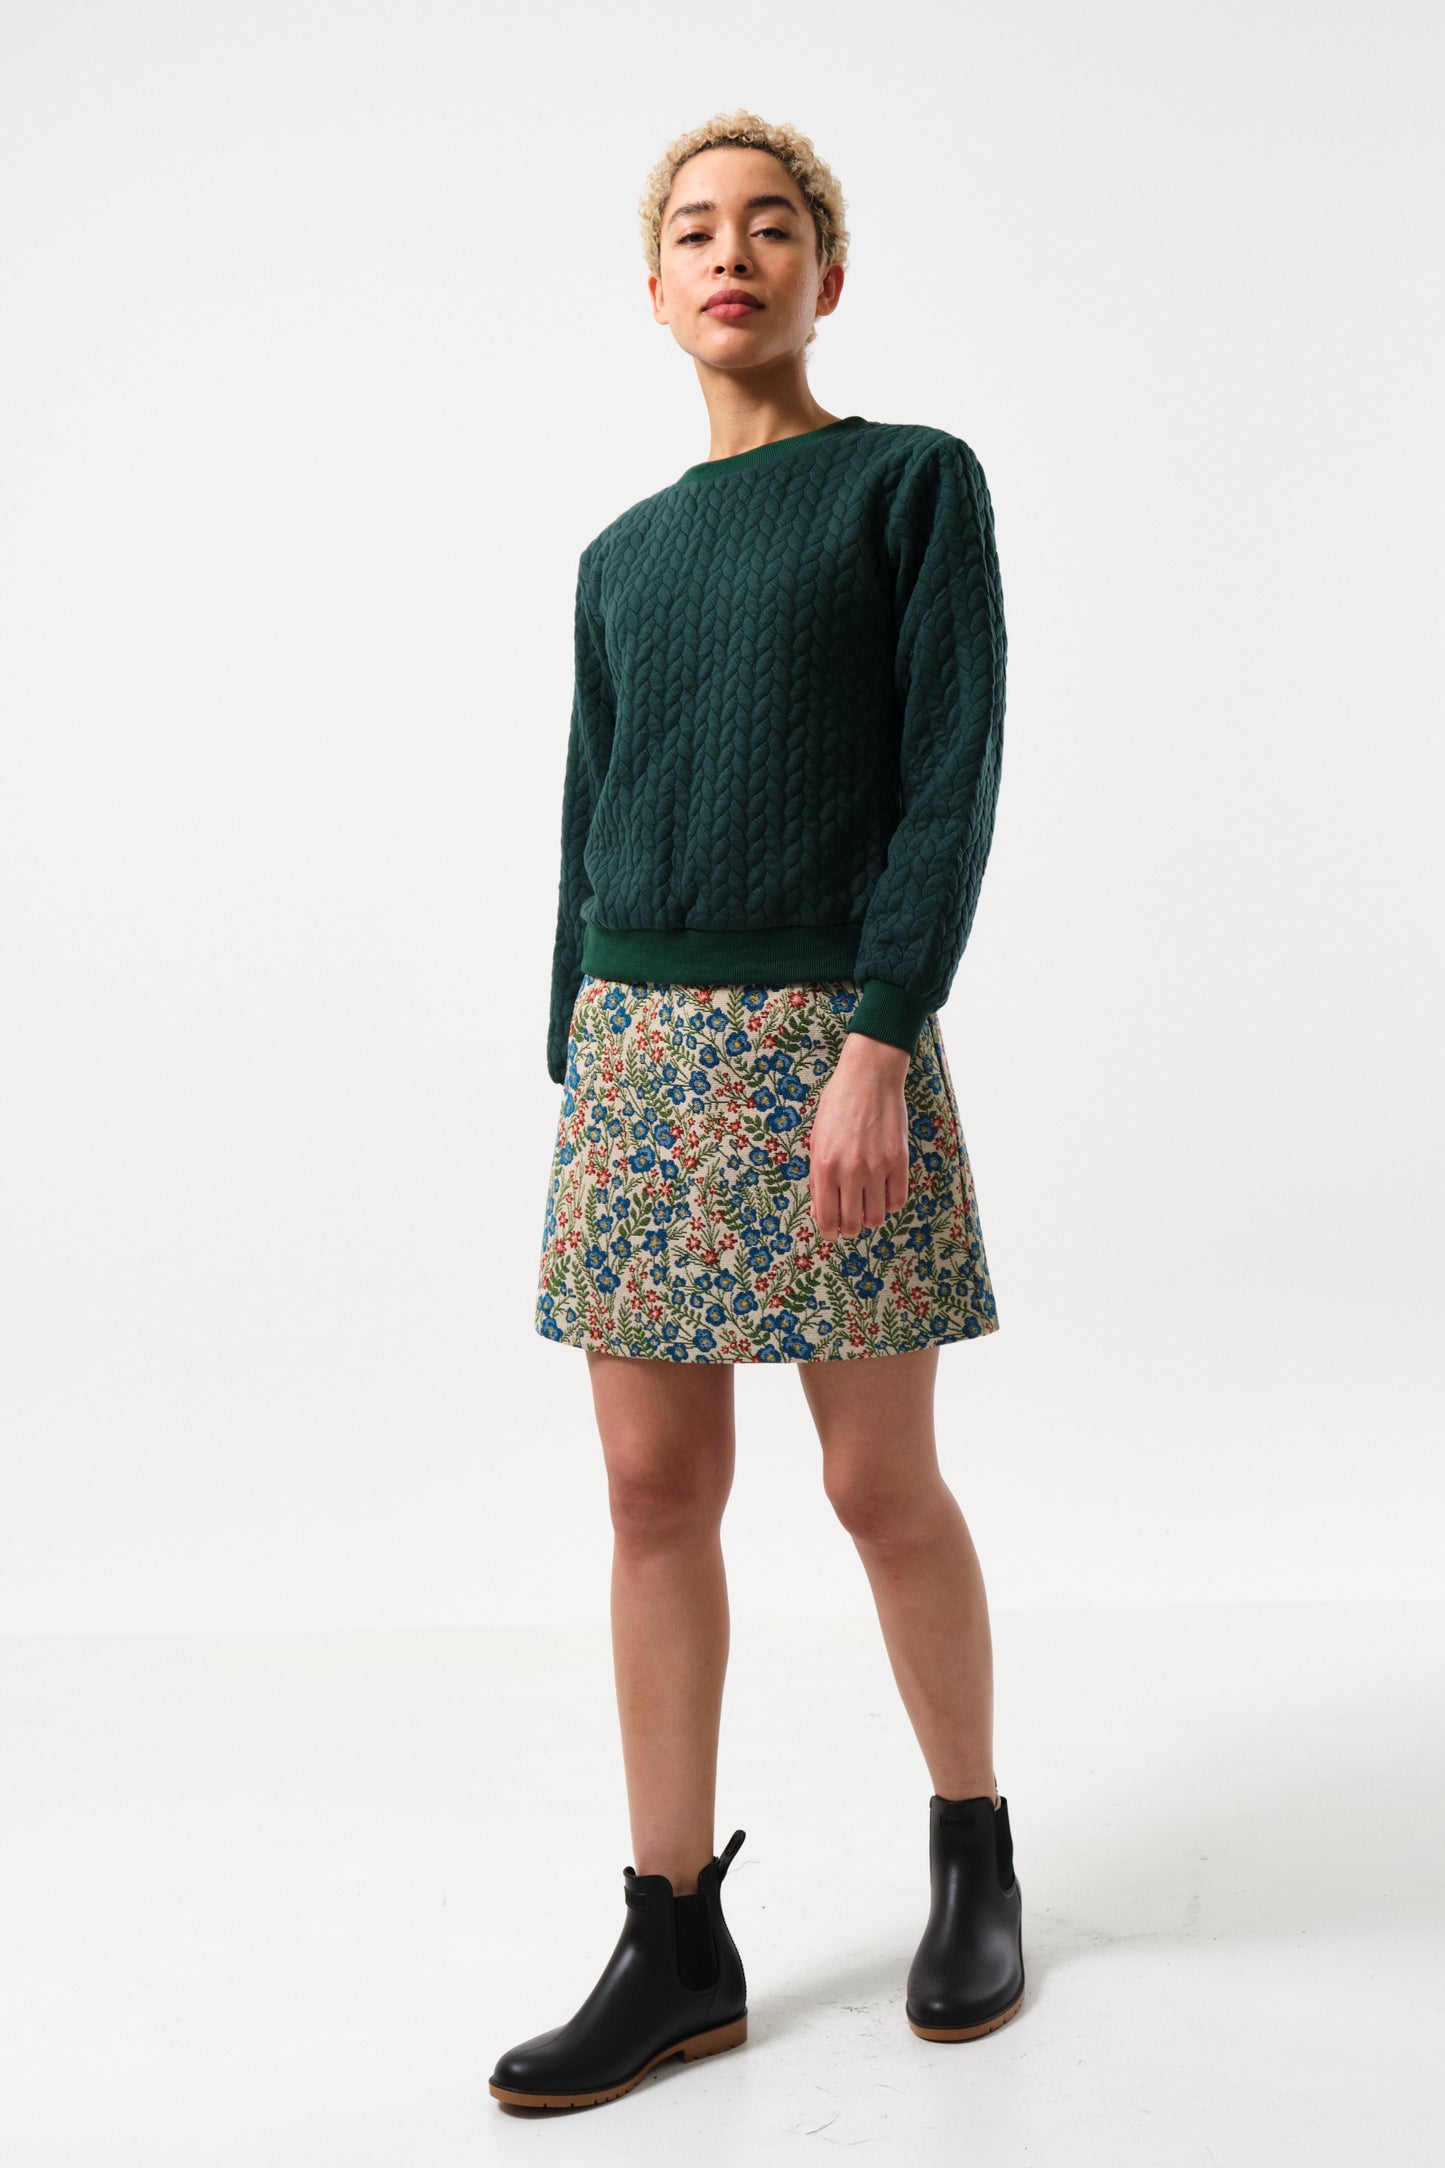 Aubin Aubusson Vintage Style Floral Jacquard Mini Skirt